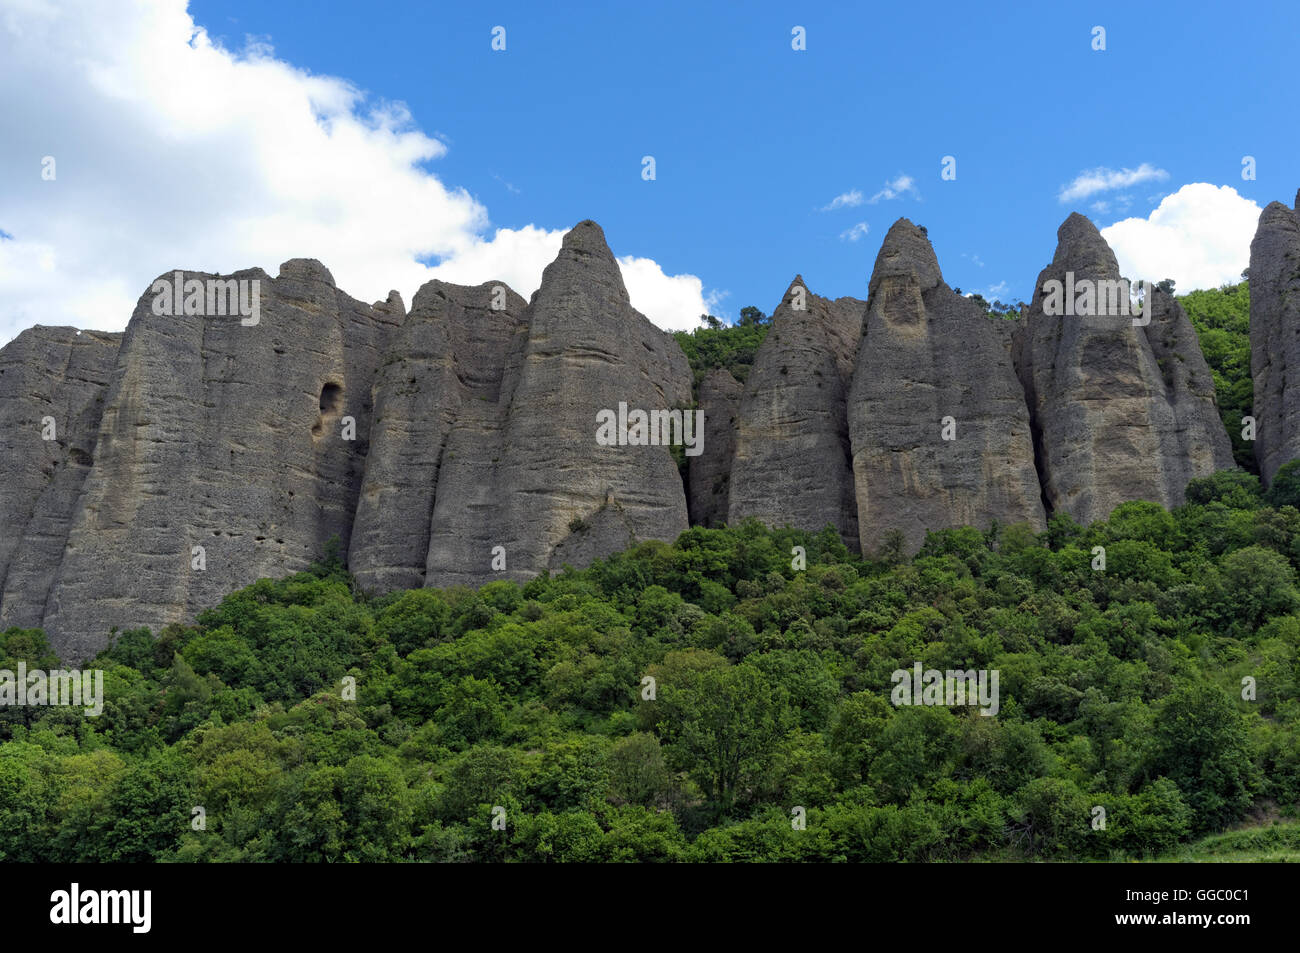 Formazione geologica nota come i penitenti di Mees nel villaggio Les Mees, Alpes de Haute Provence, Francia Foto Stock